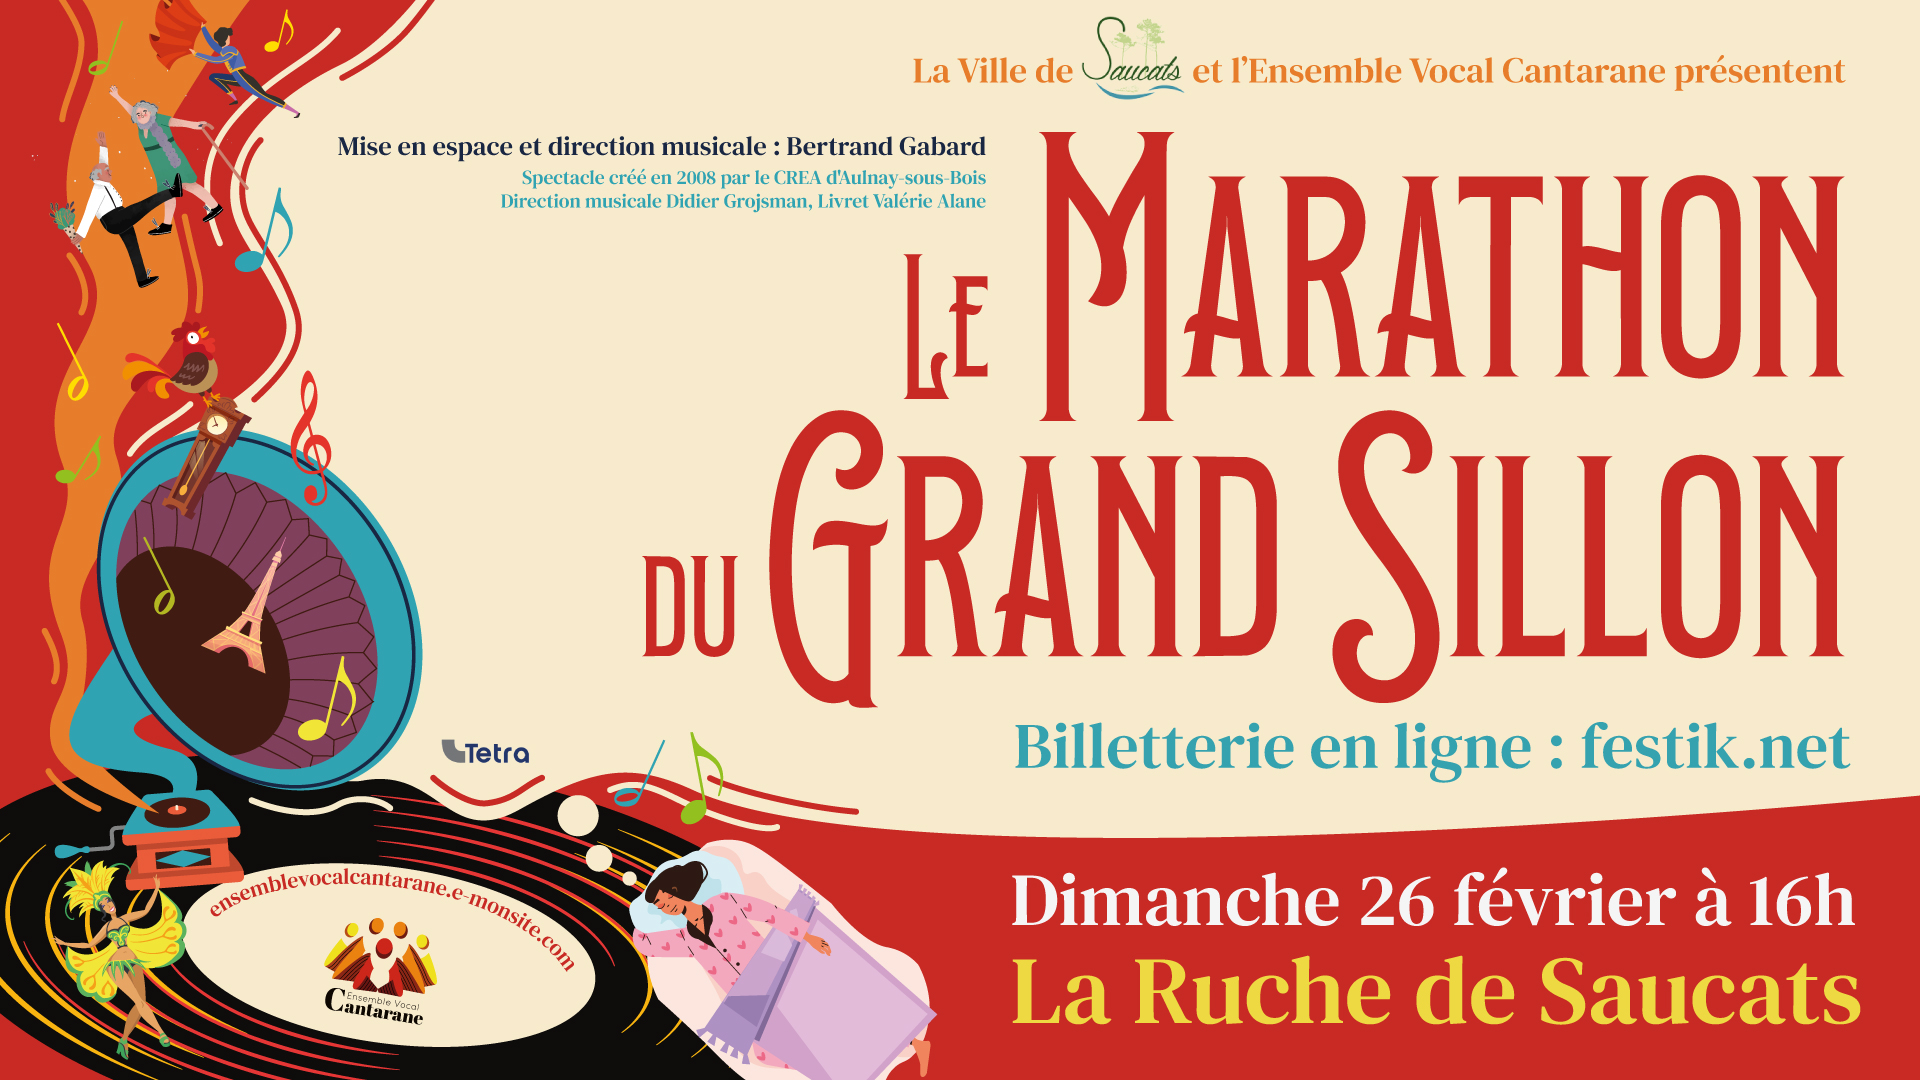 Le_Marathon-du_Grand_Sillon_à_Saucats_-_Visuel_1920x1080px_pour_post_Facebook.jpg